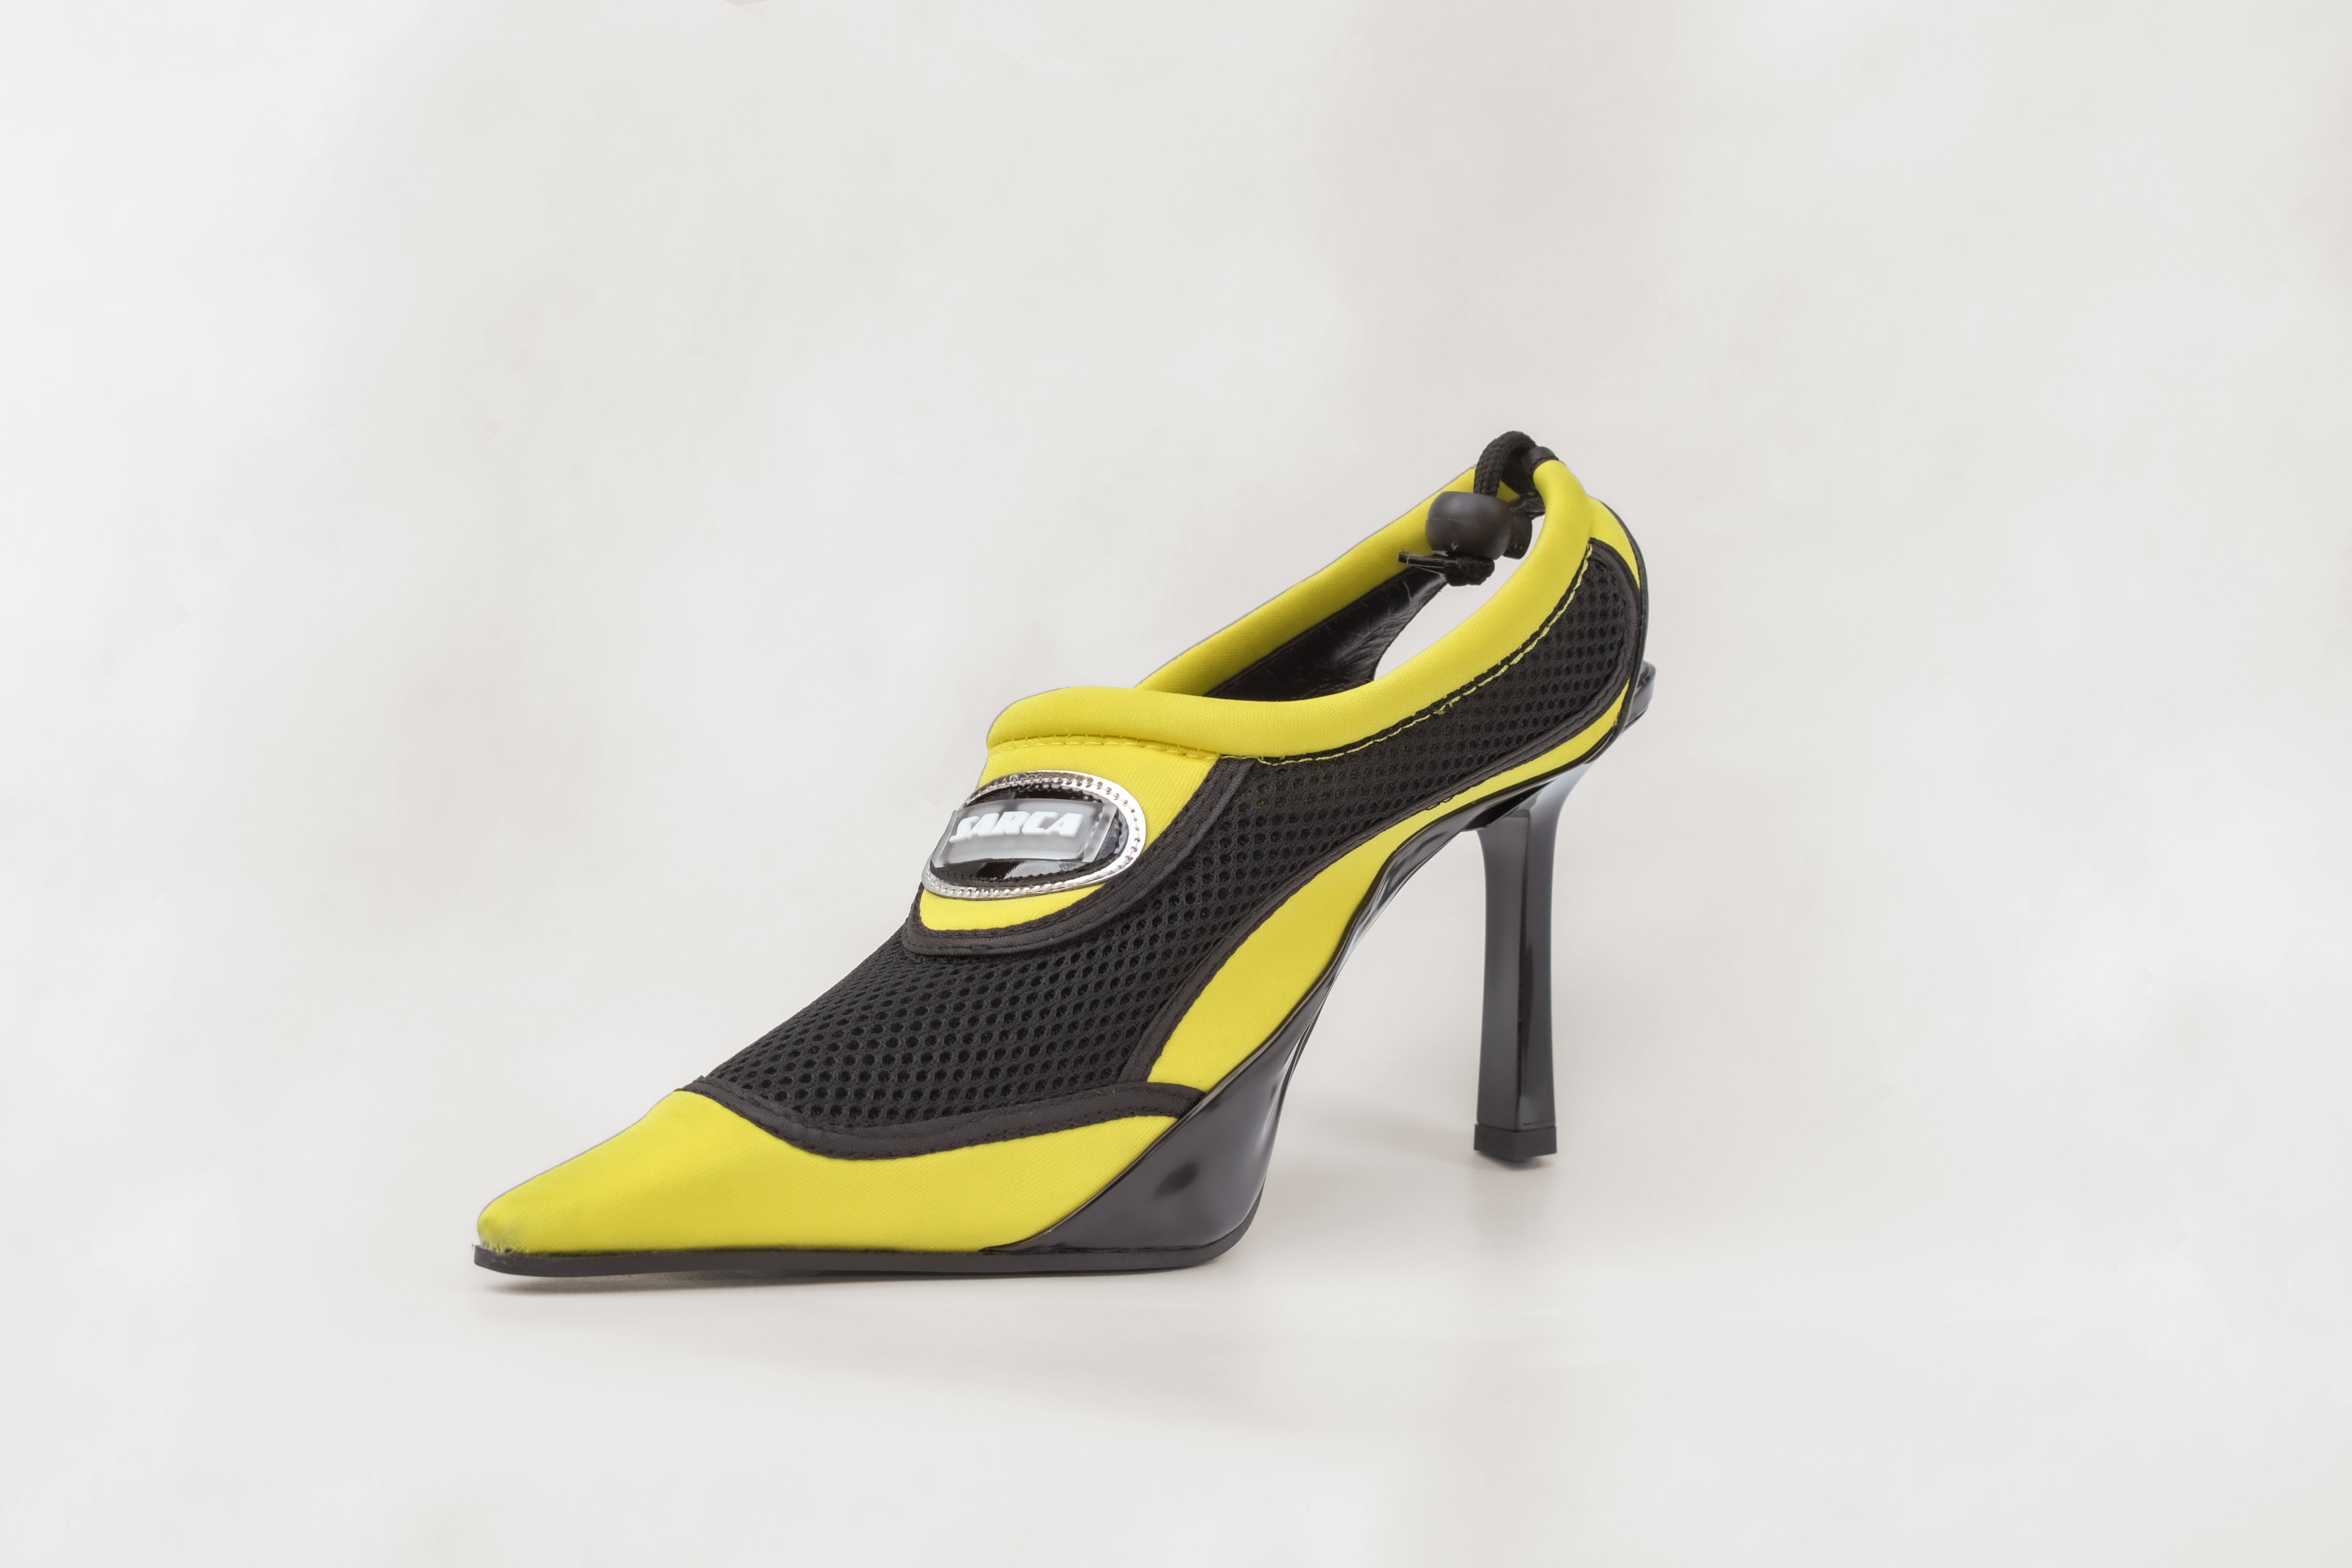 Women's Pointed Sharp Stiletto High Heels- Red, Black, Yellow, Beige –  Kalsord